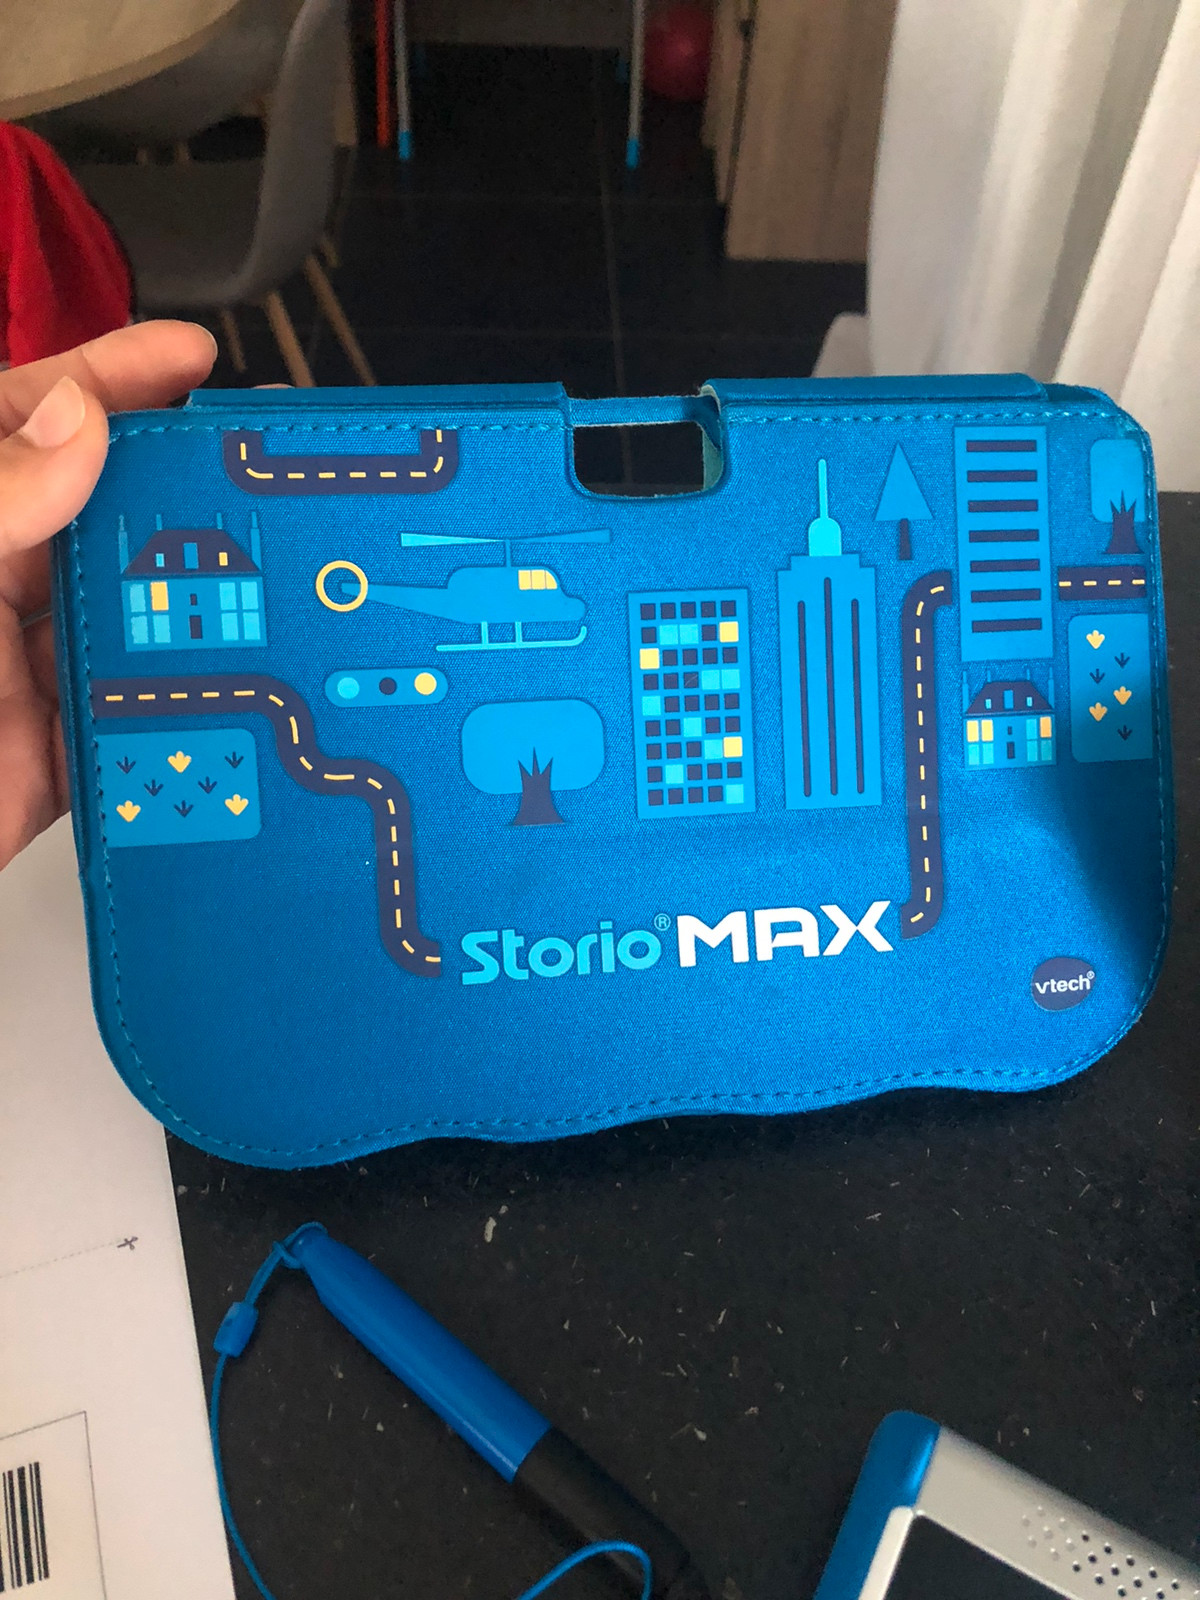 Storio Max 2.0 - VTech